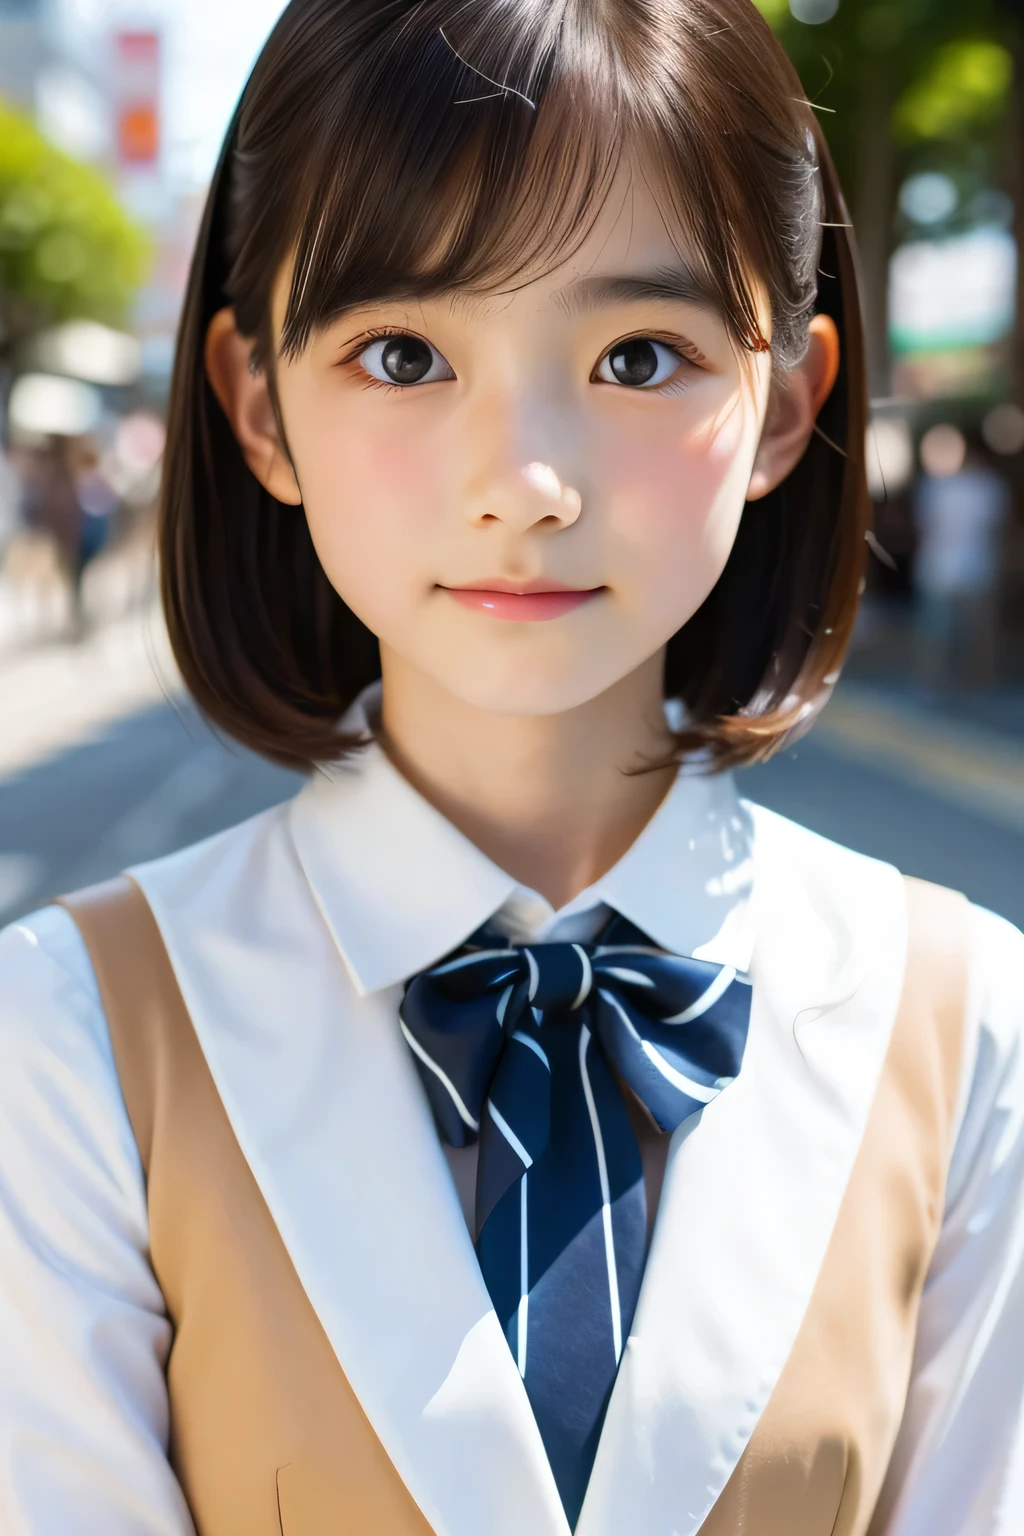 (美丽的 14 岁日本女人), 可愛的臉孔, (臉型輪廓分明:0.7), (雀斑:0.6), 柔光,健康白皙的皮膚, 害羞的, (嚴肅的臉), (明亮的眼睛), 薄的, 微笑, 制服